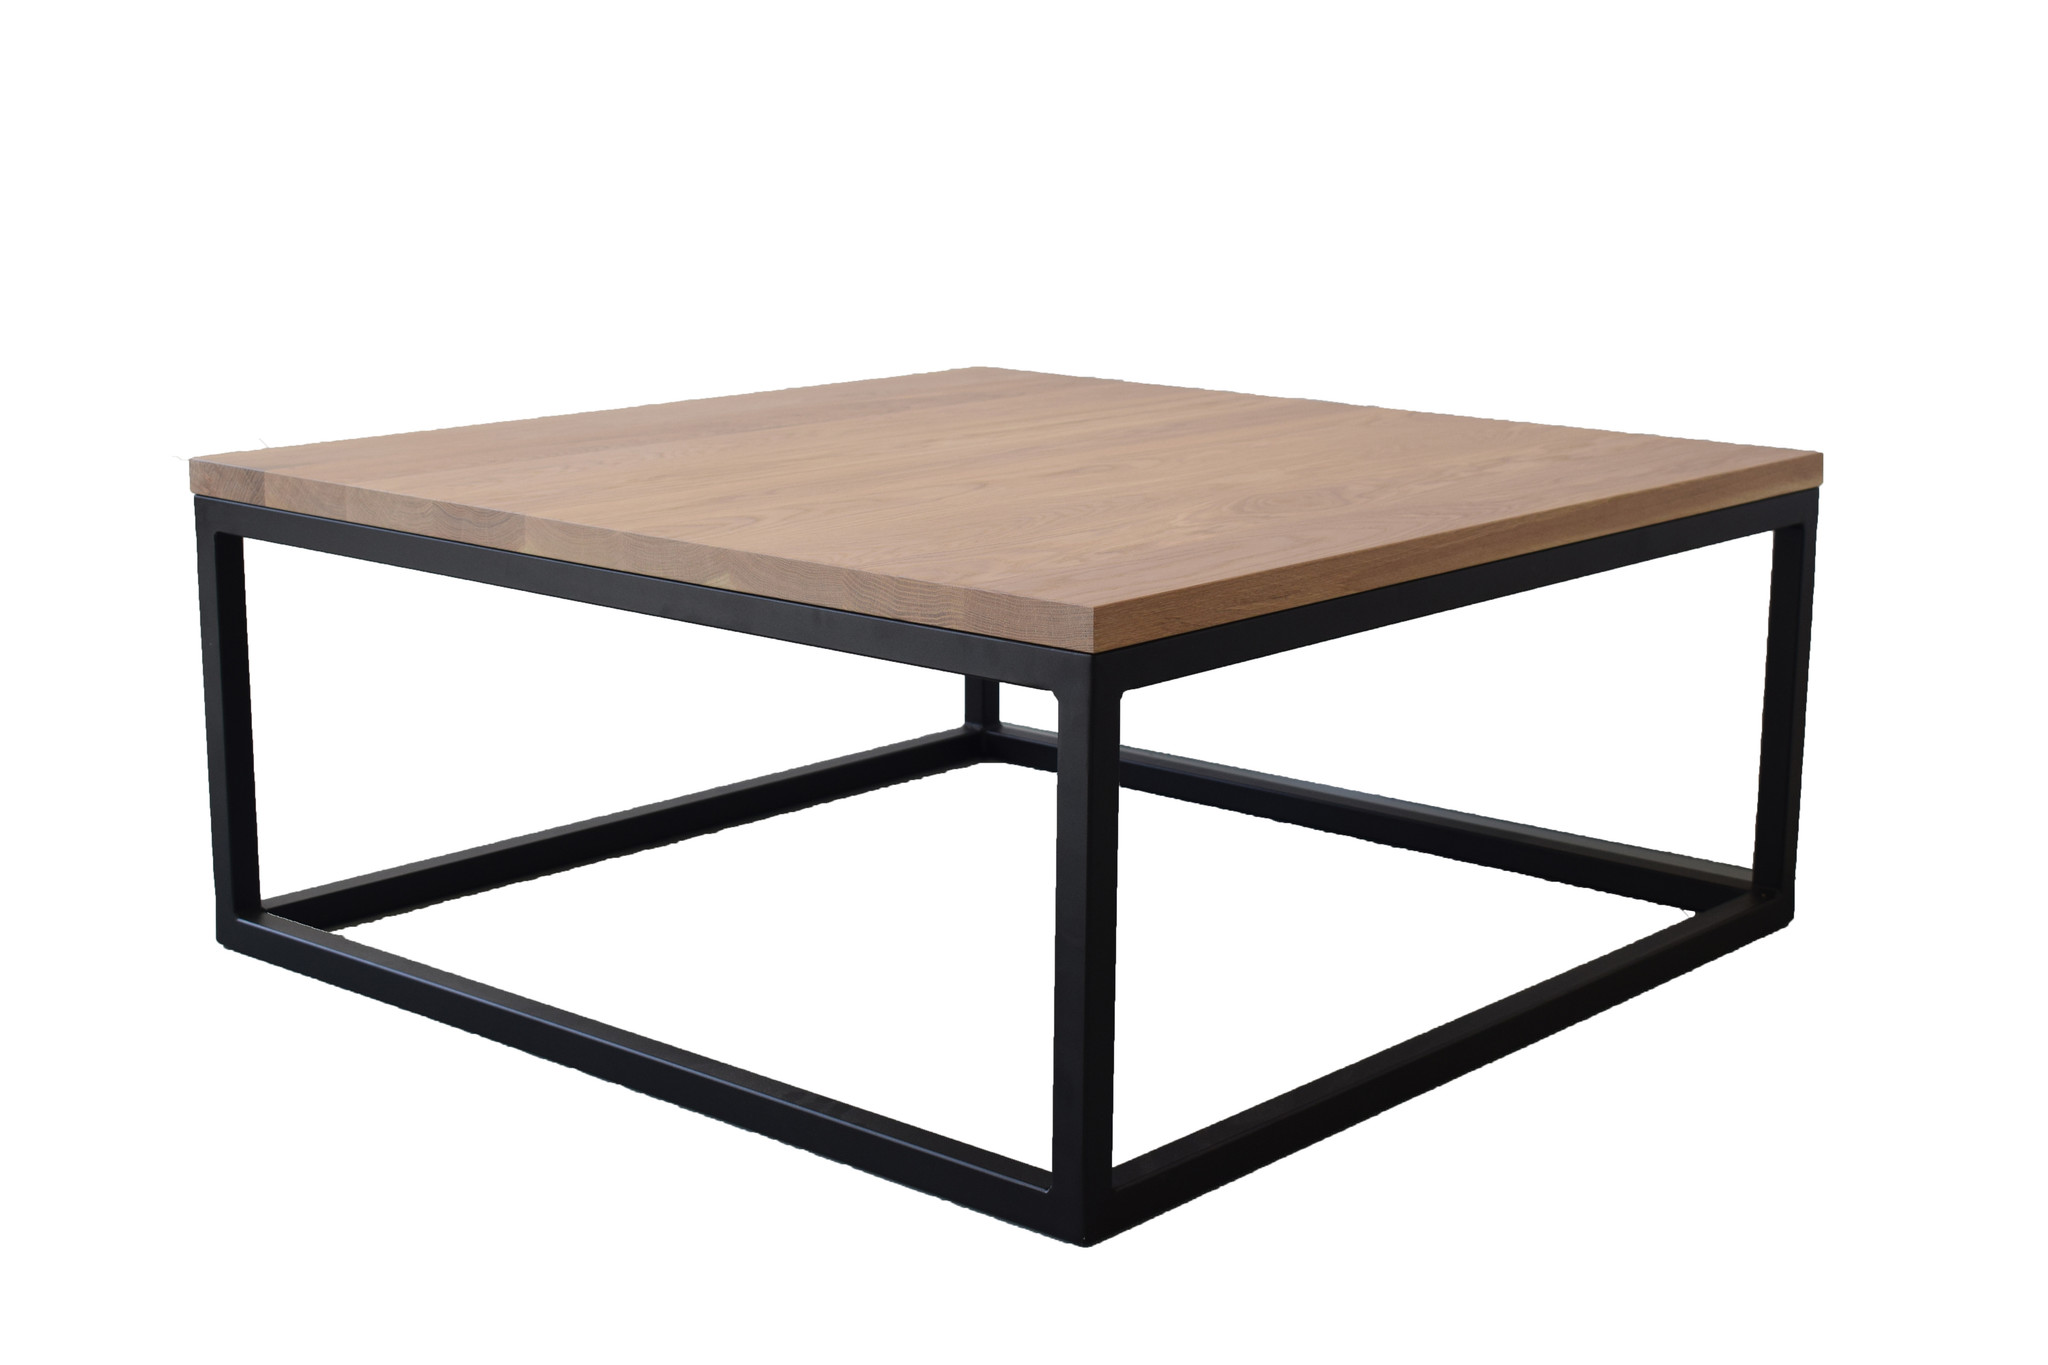 Eiken salontafel vierkant met zwart frame | 100x100cm | Massief Steiken meubelen